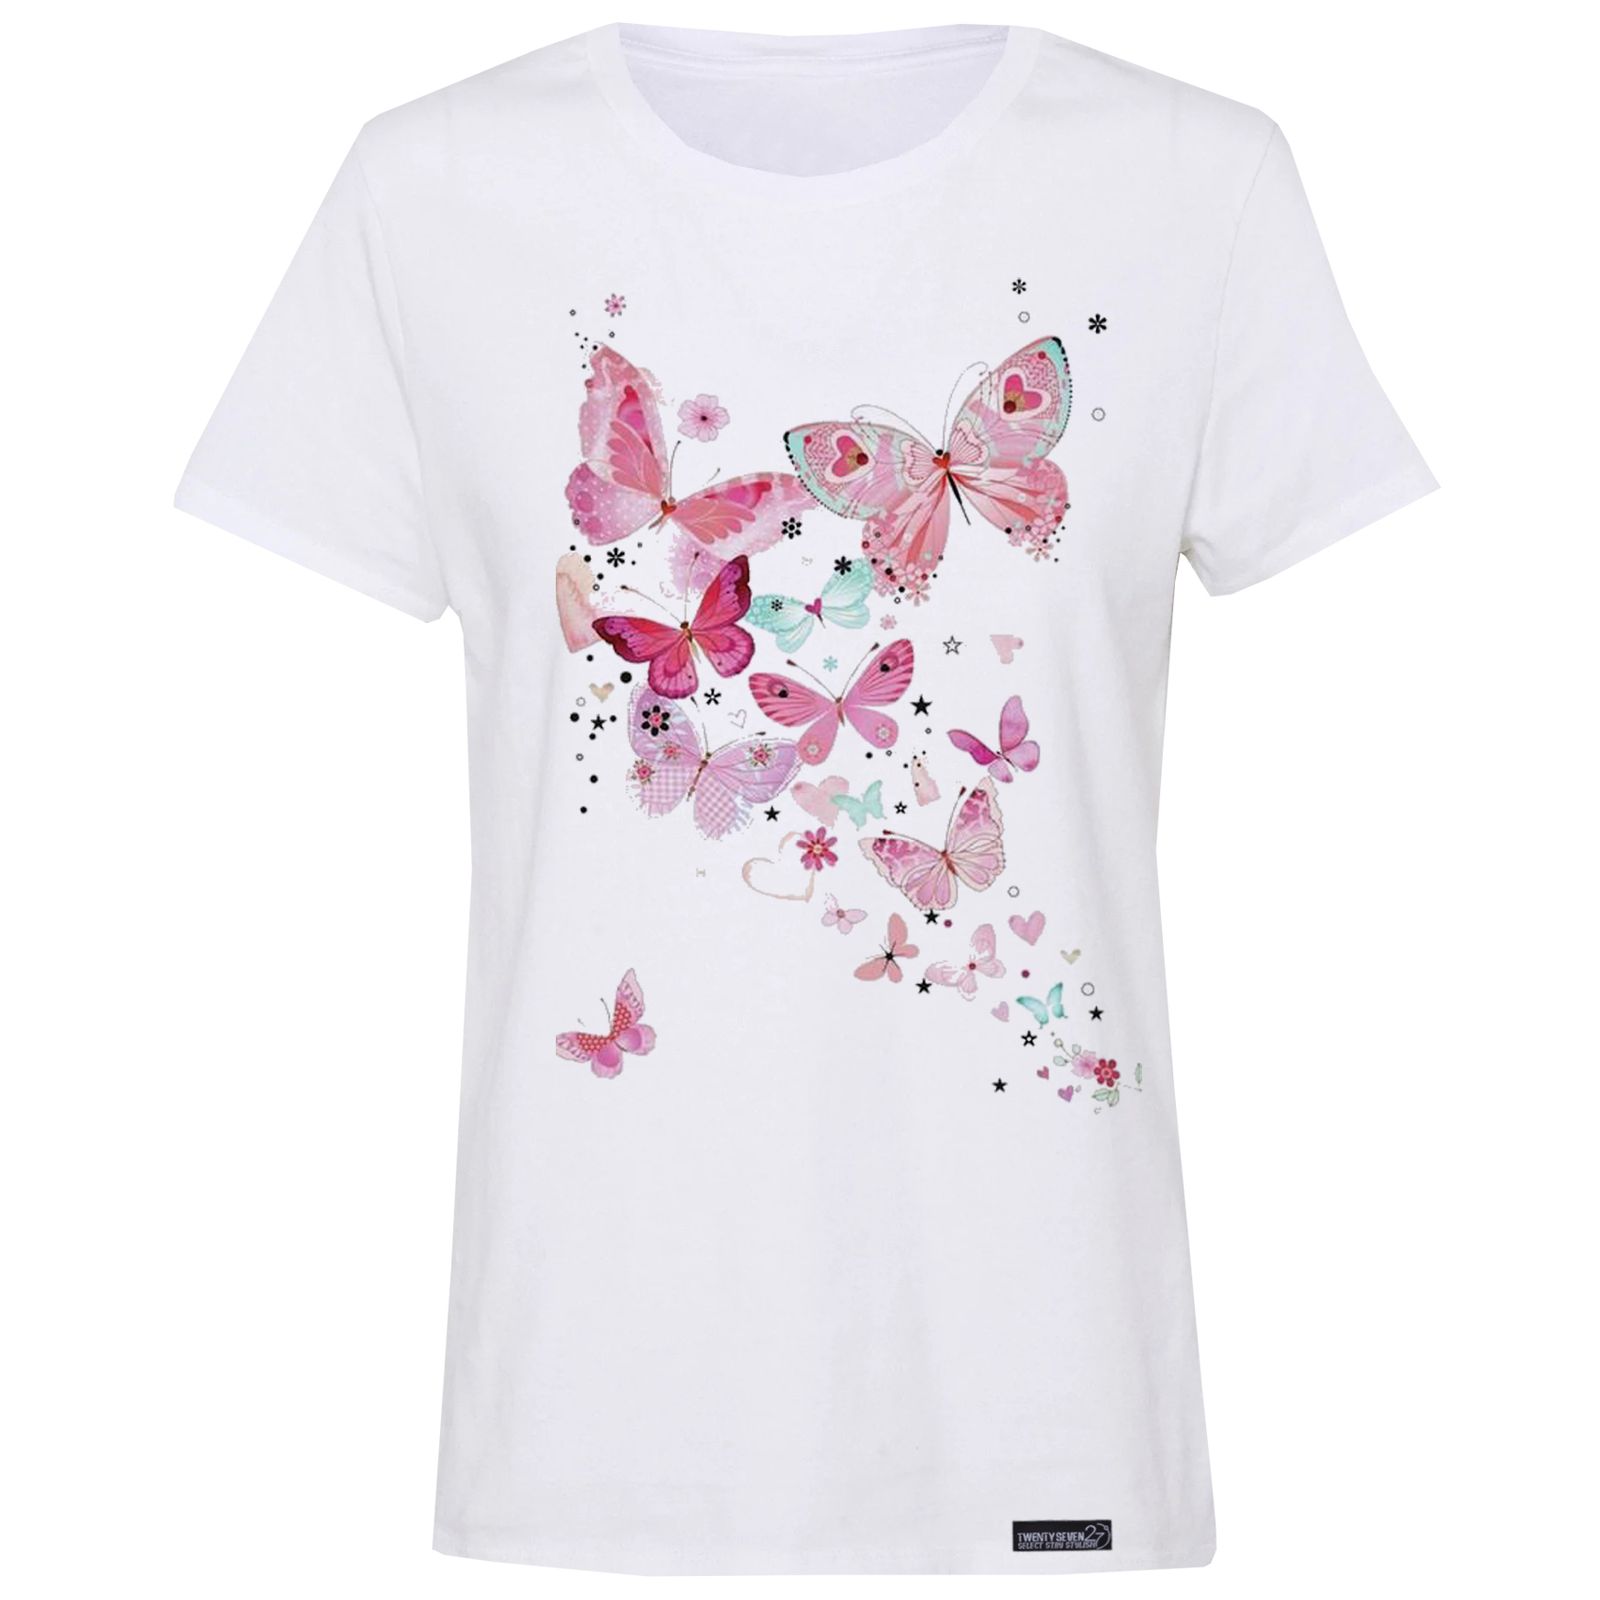 تی شرت آستین کوتاه زنانه 27 مدل پروانه کد WN829 -  - 1